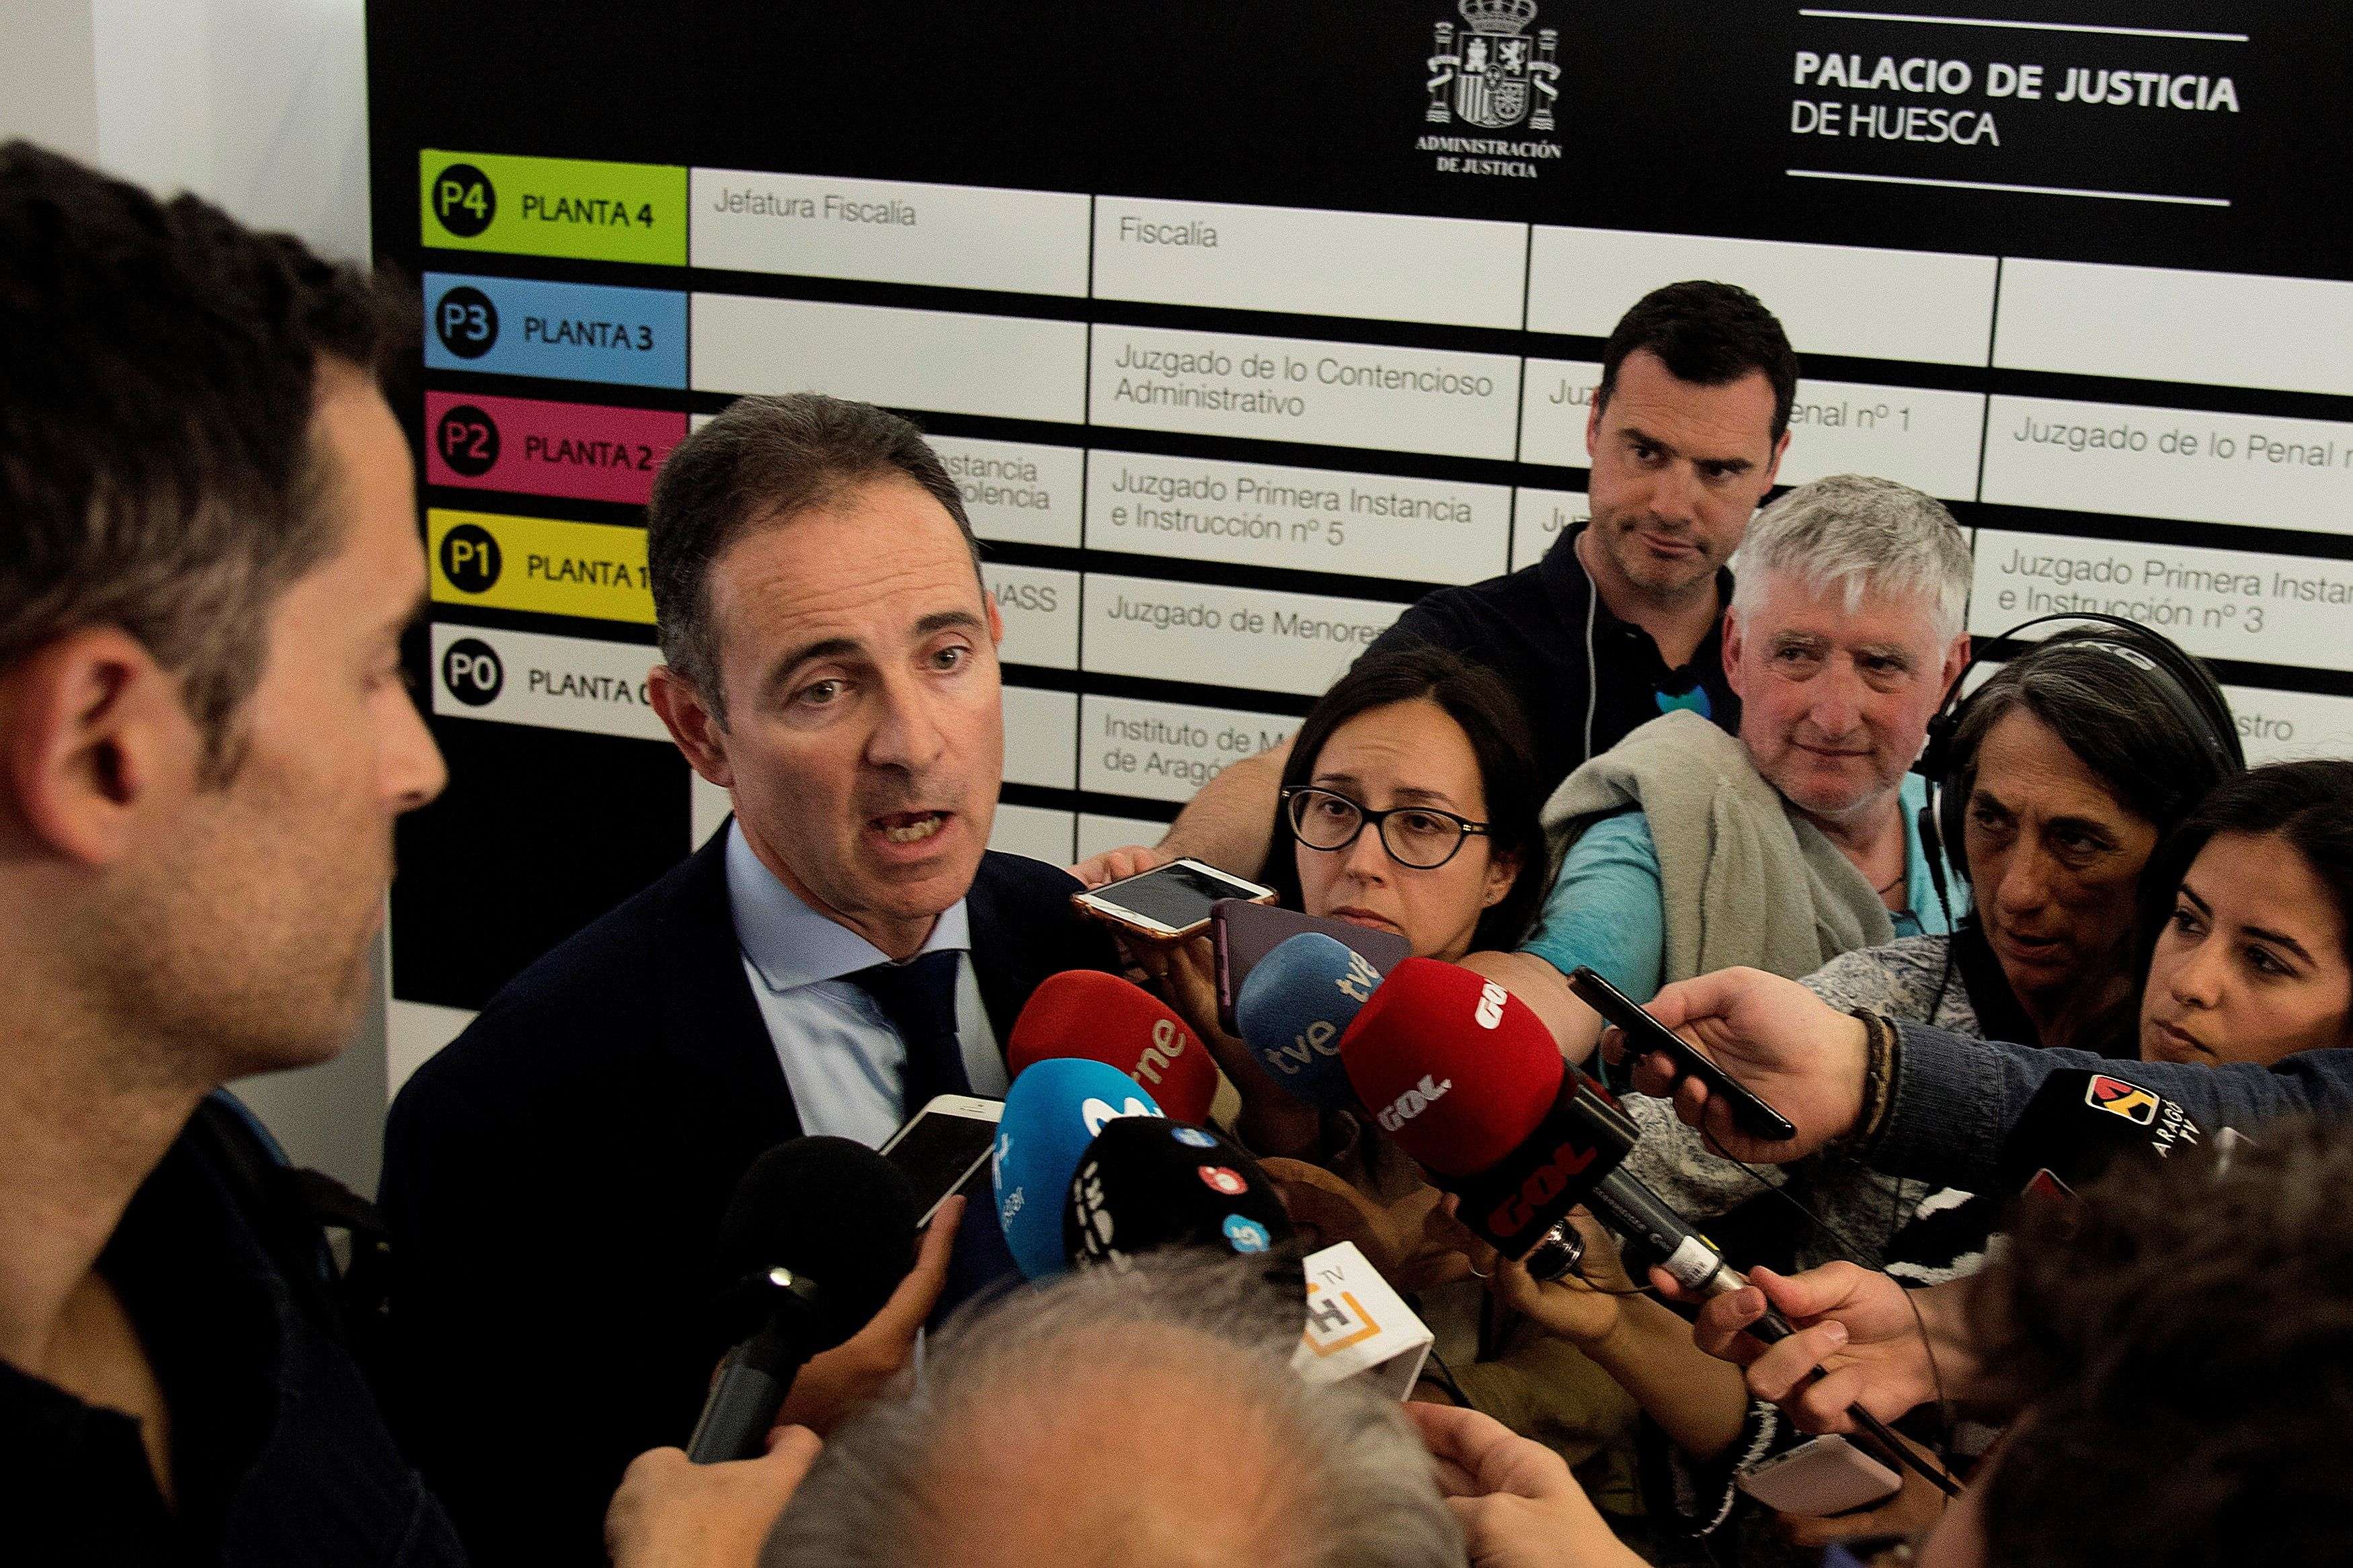 El fiscal jefe de Huesca, Juan Baratech, ha comparecido ante los medios para confirmar los presuntos delitos imputados y las medidas cautelares solicitadas.